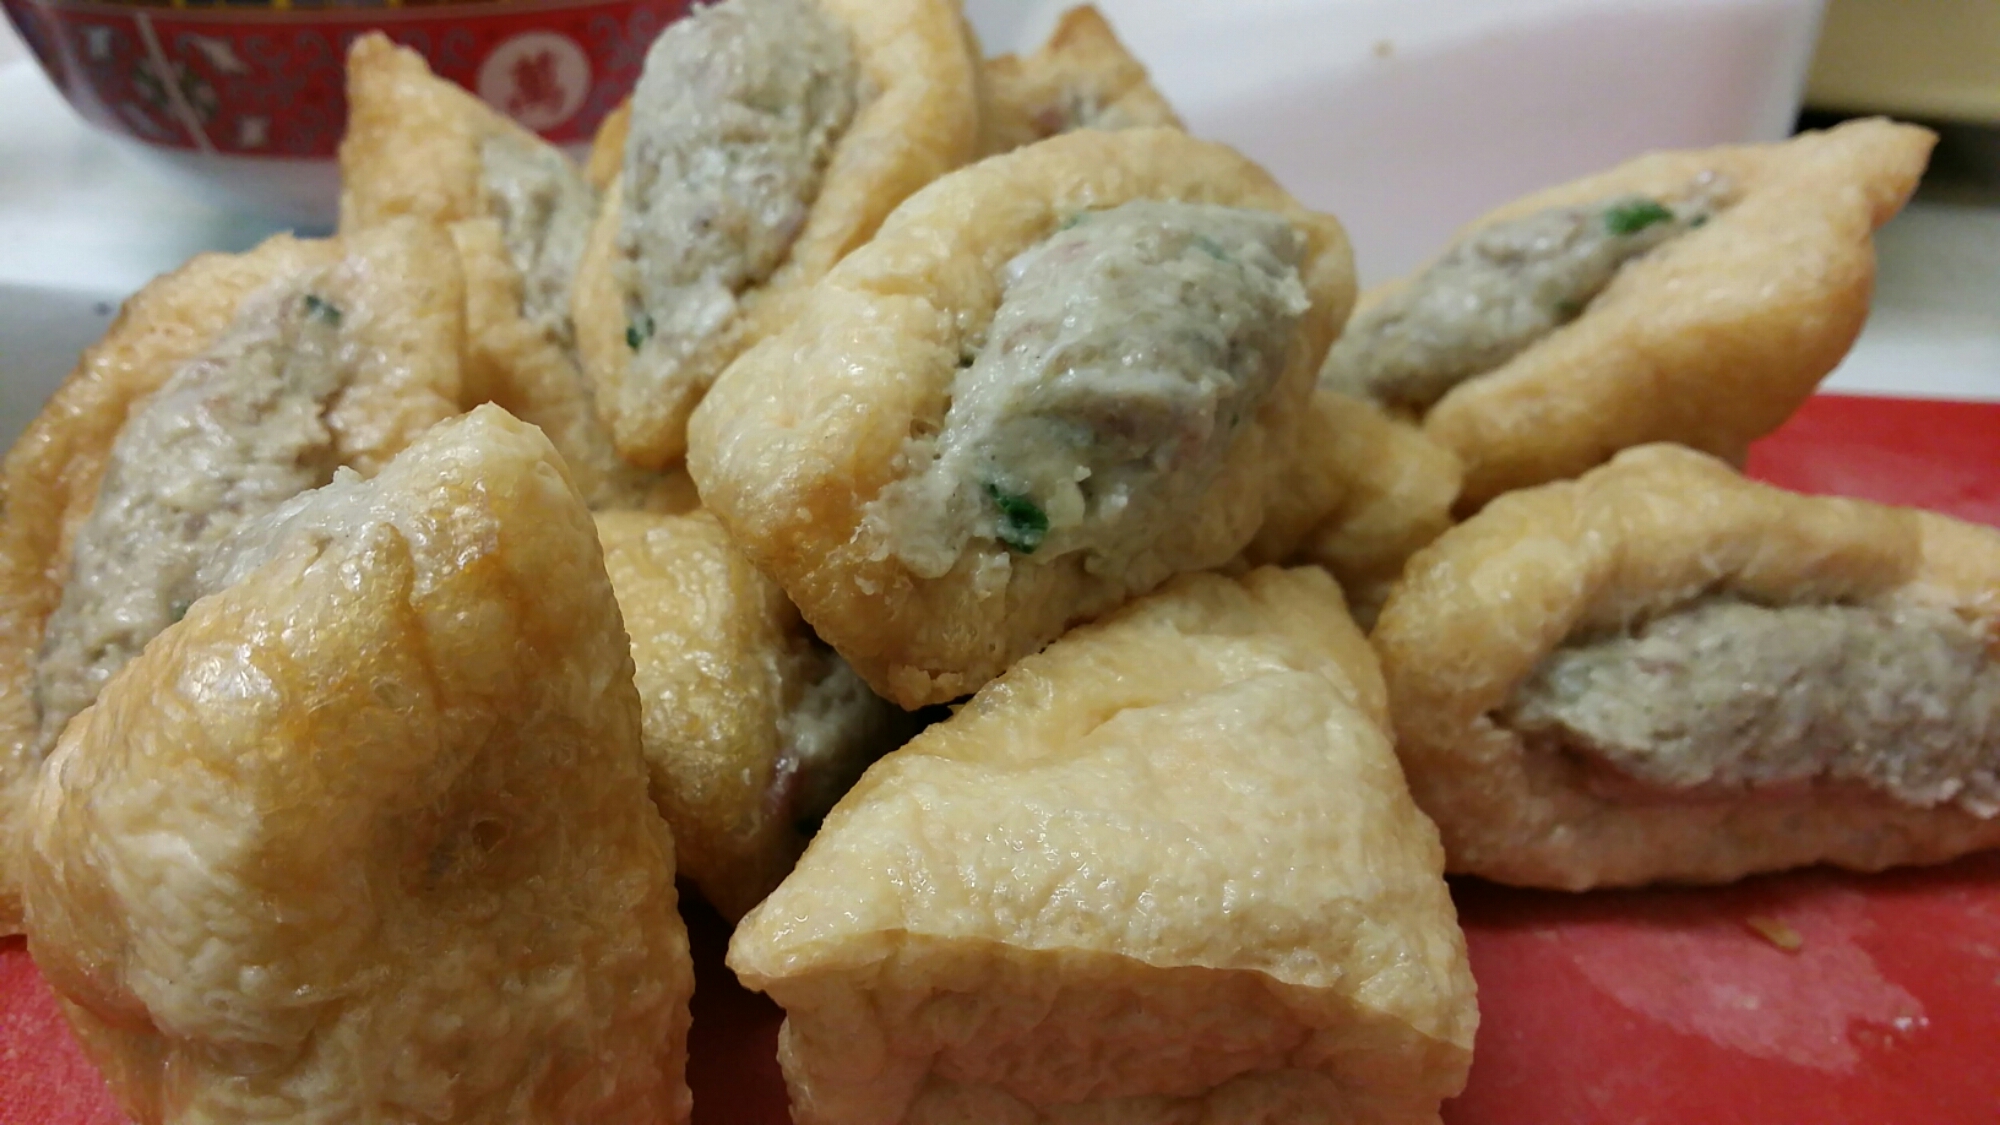 Resep Masakan Tahu Bakso Crispy, Yummy!! - Jatik.com